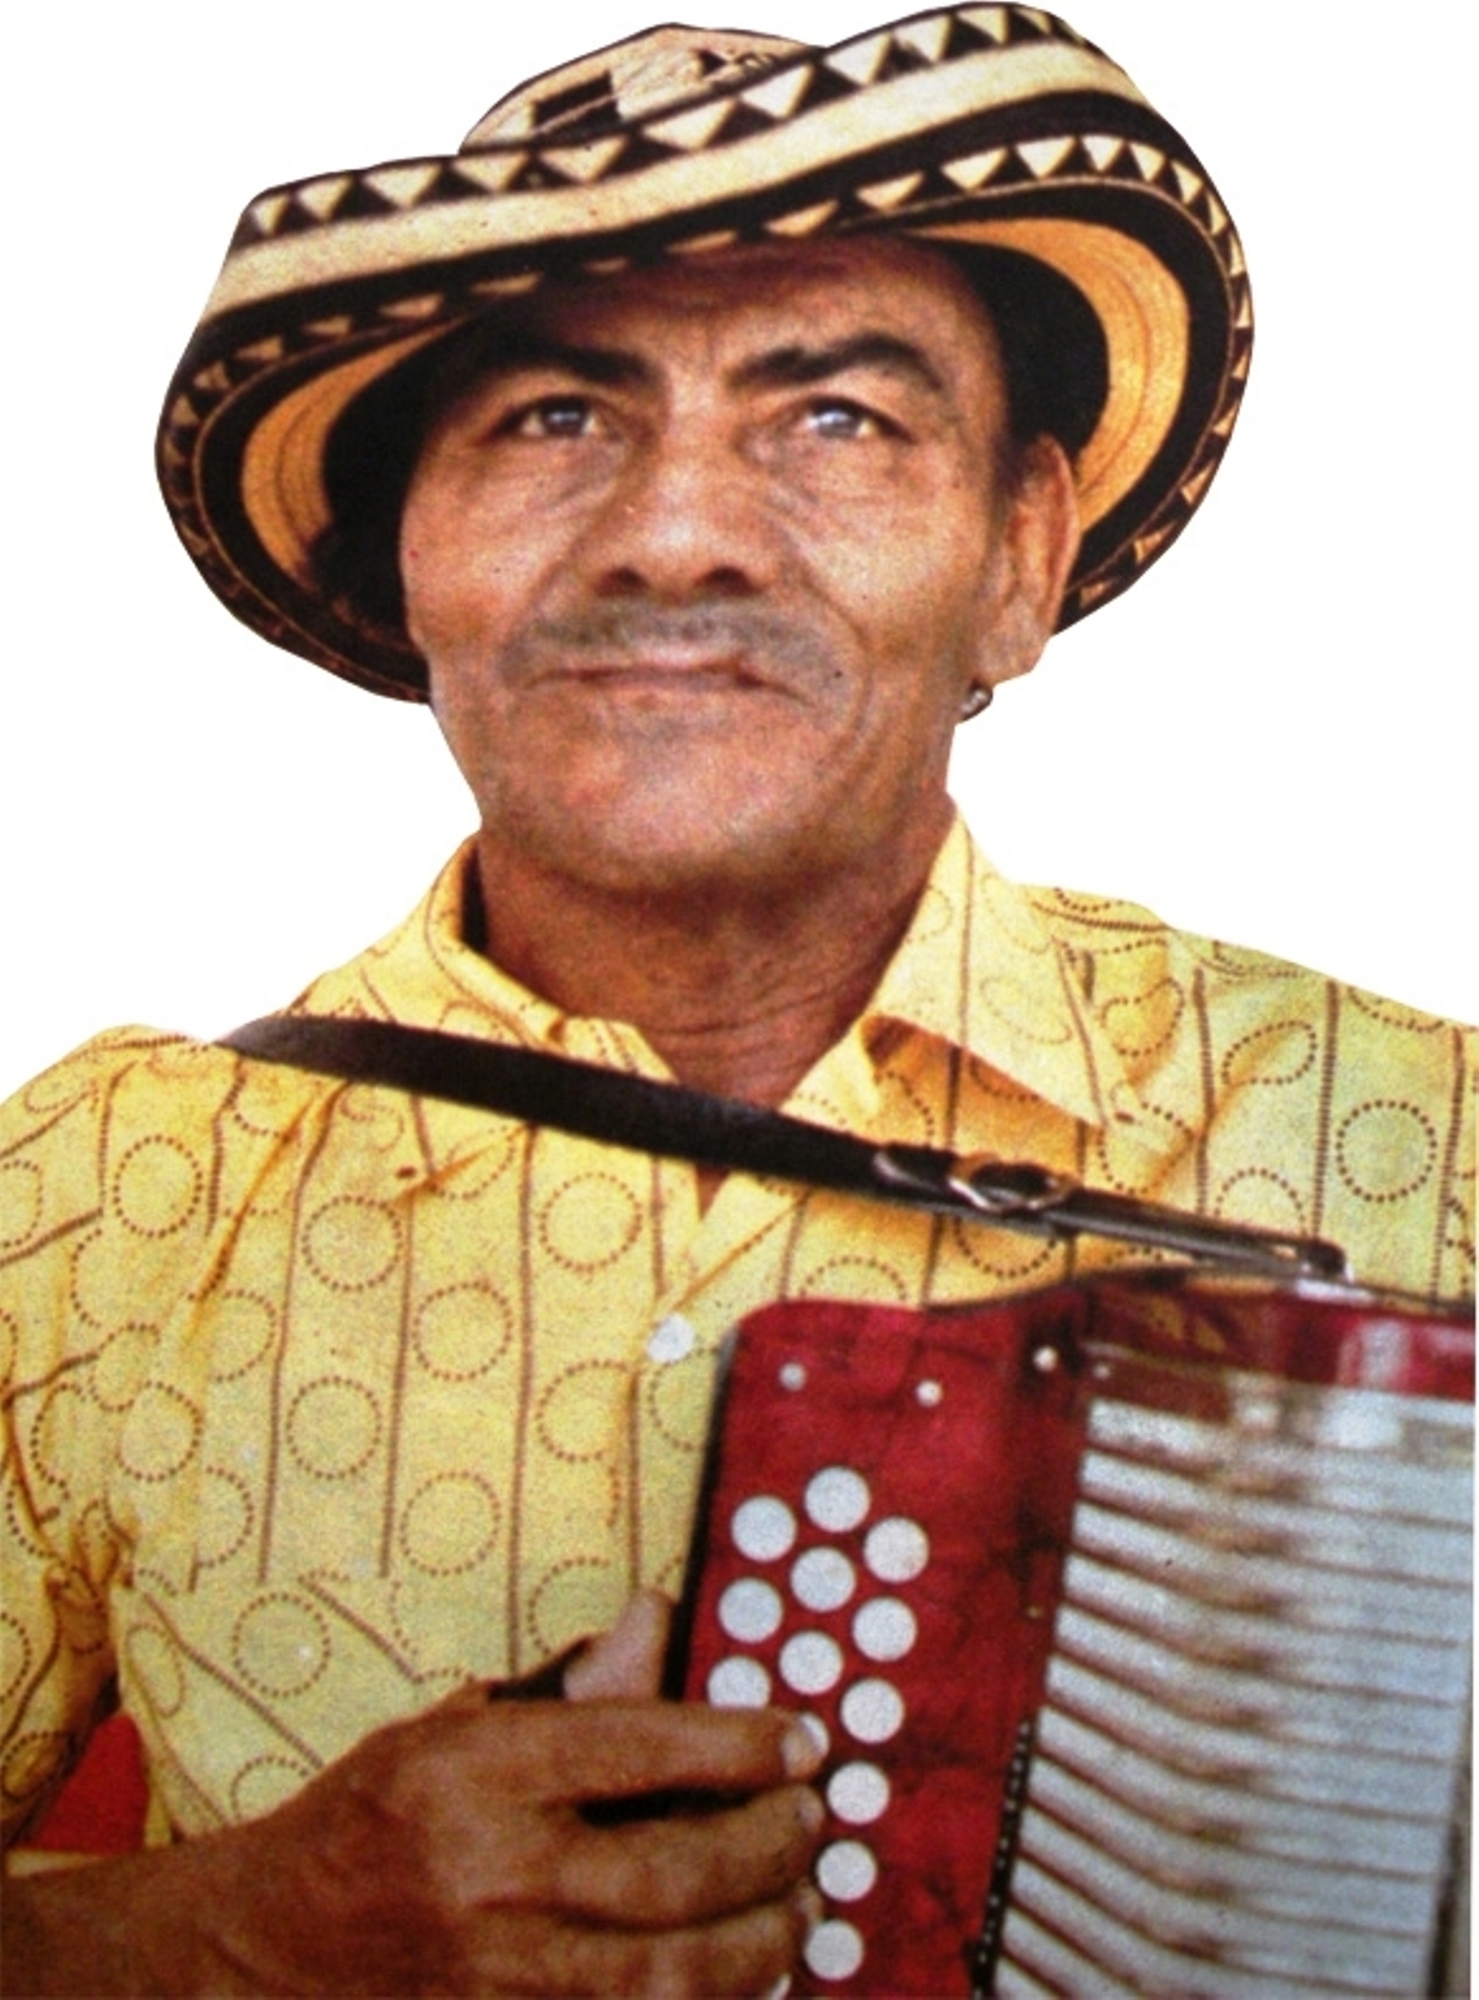 Juancho Polo Valencia